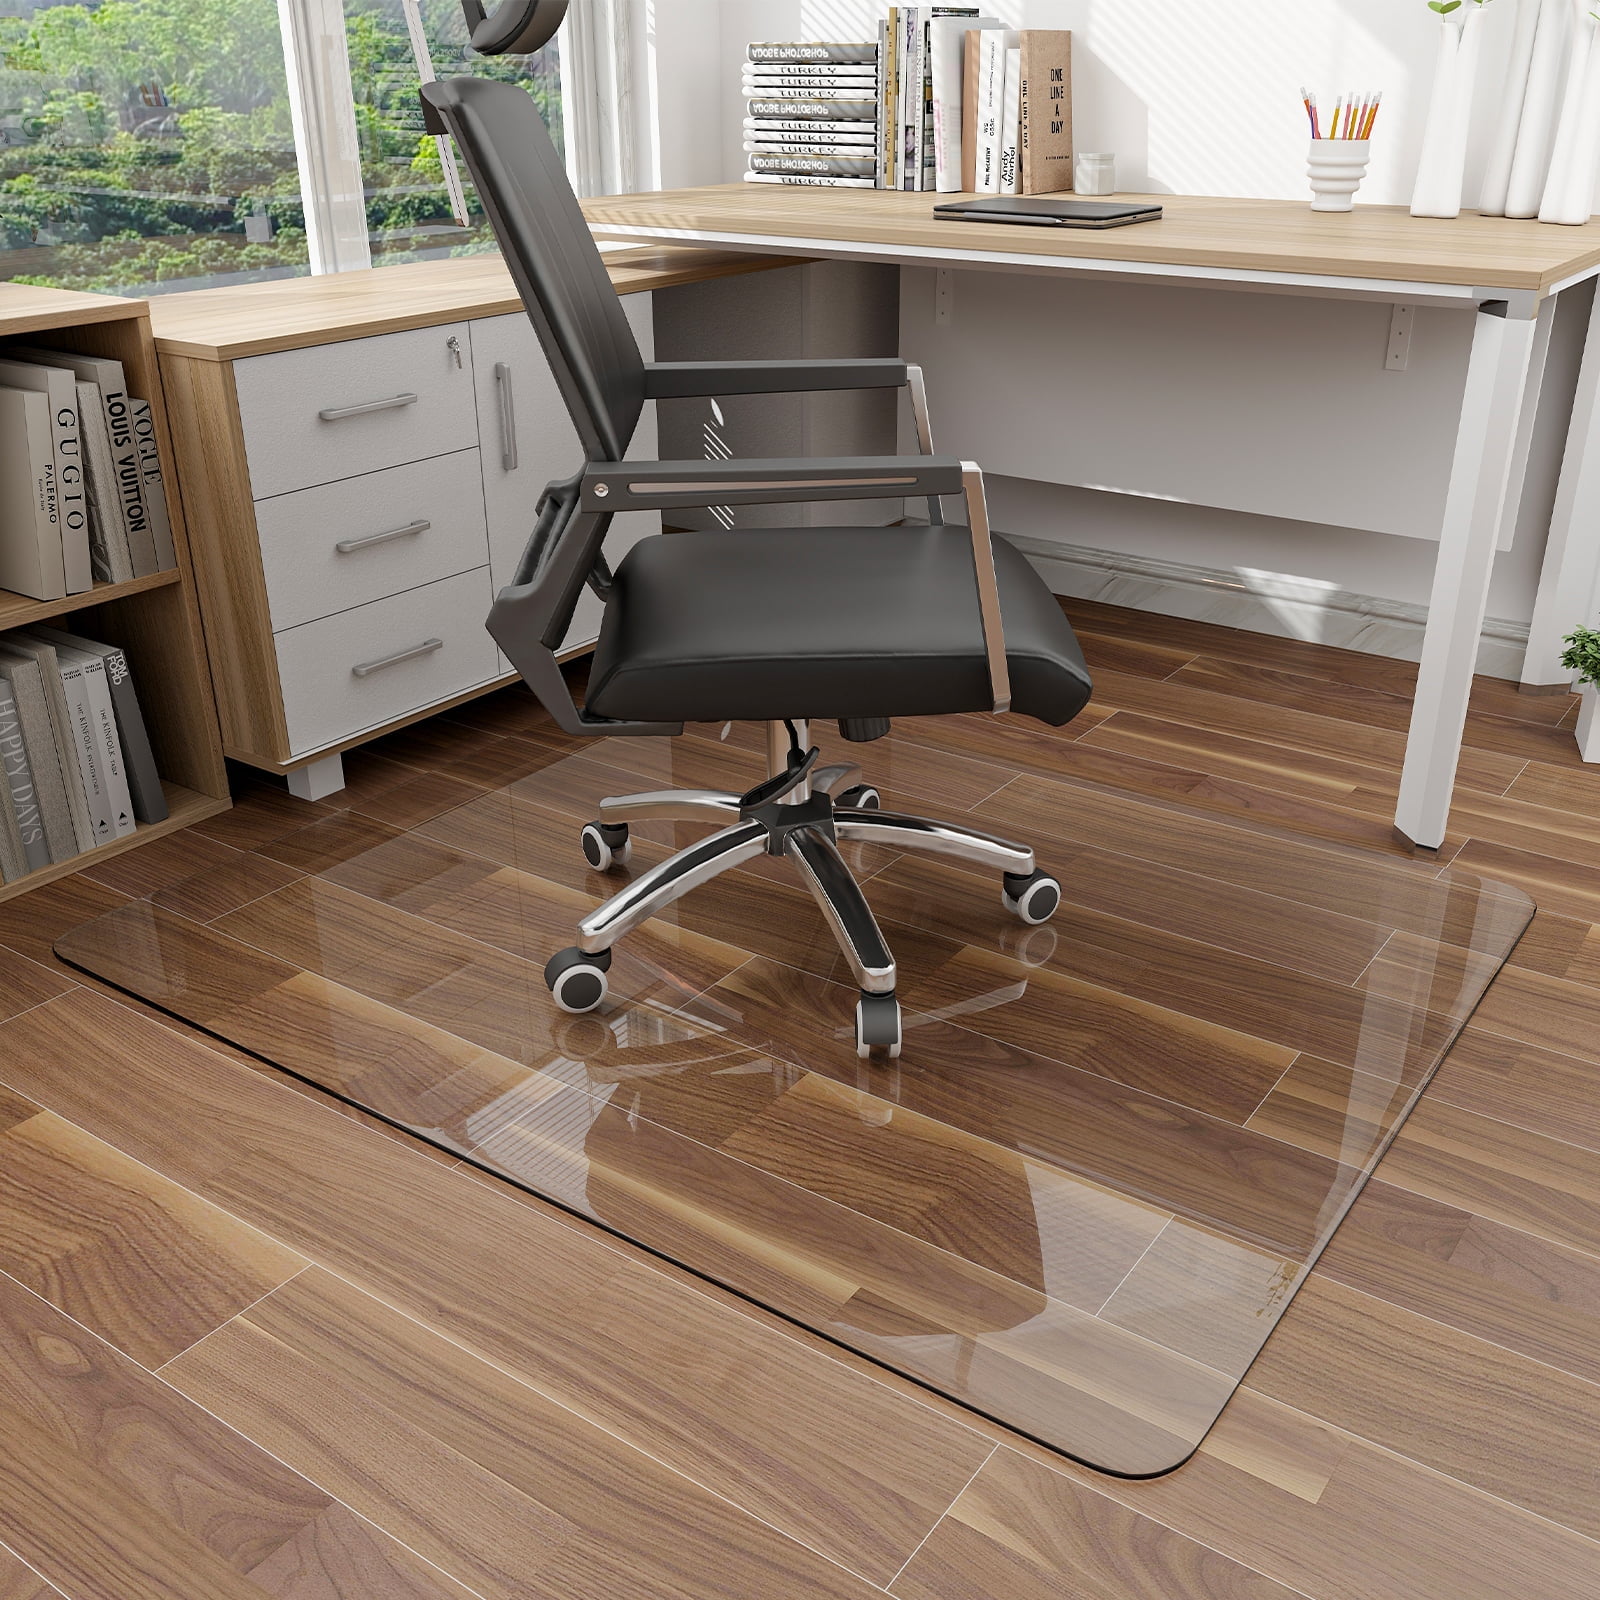 Tempered Glass Chair Mat Office Chair Mats for Carpet & Hardwood Floor Desk  Chair Mat 36x46X1/5